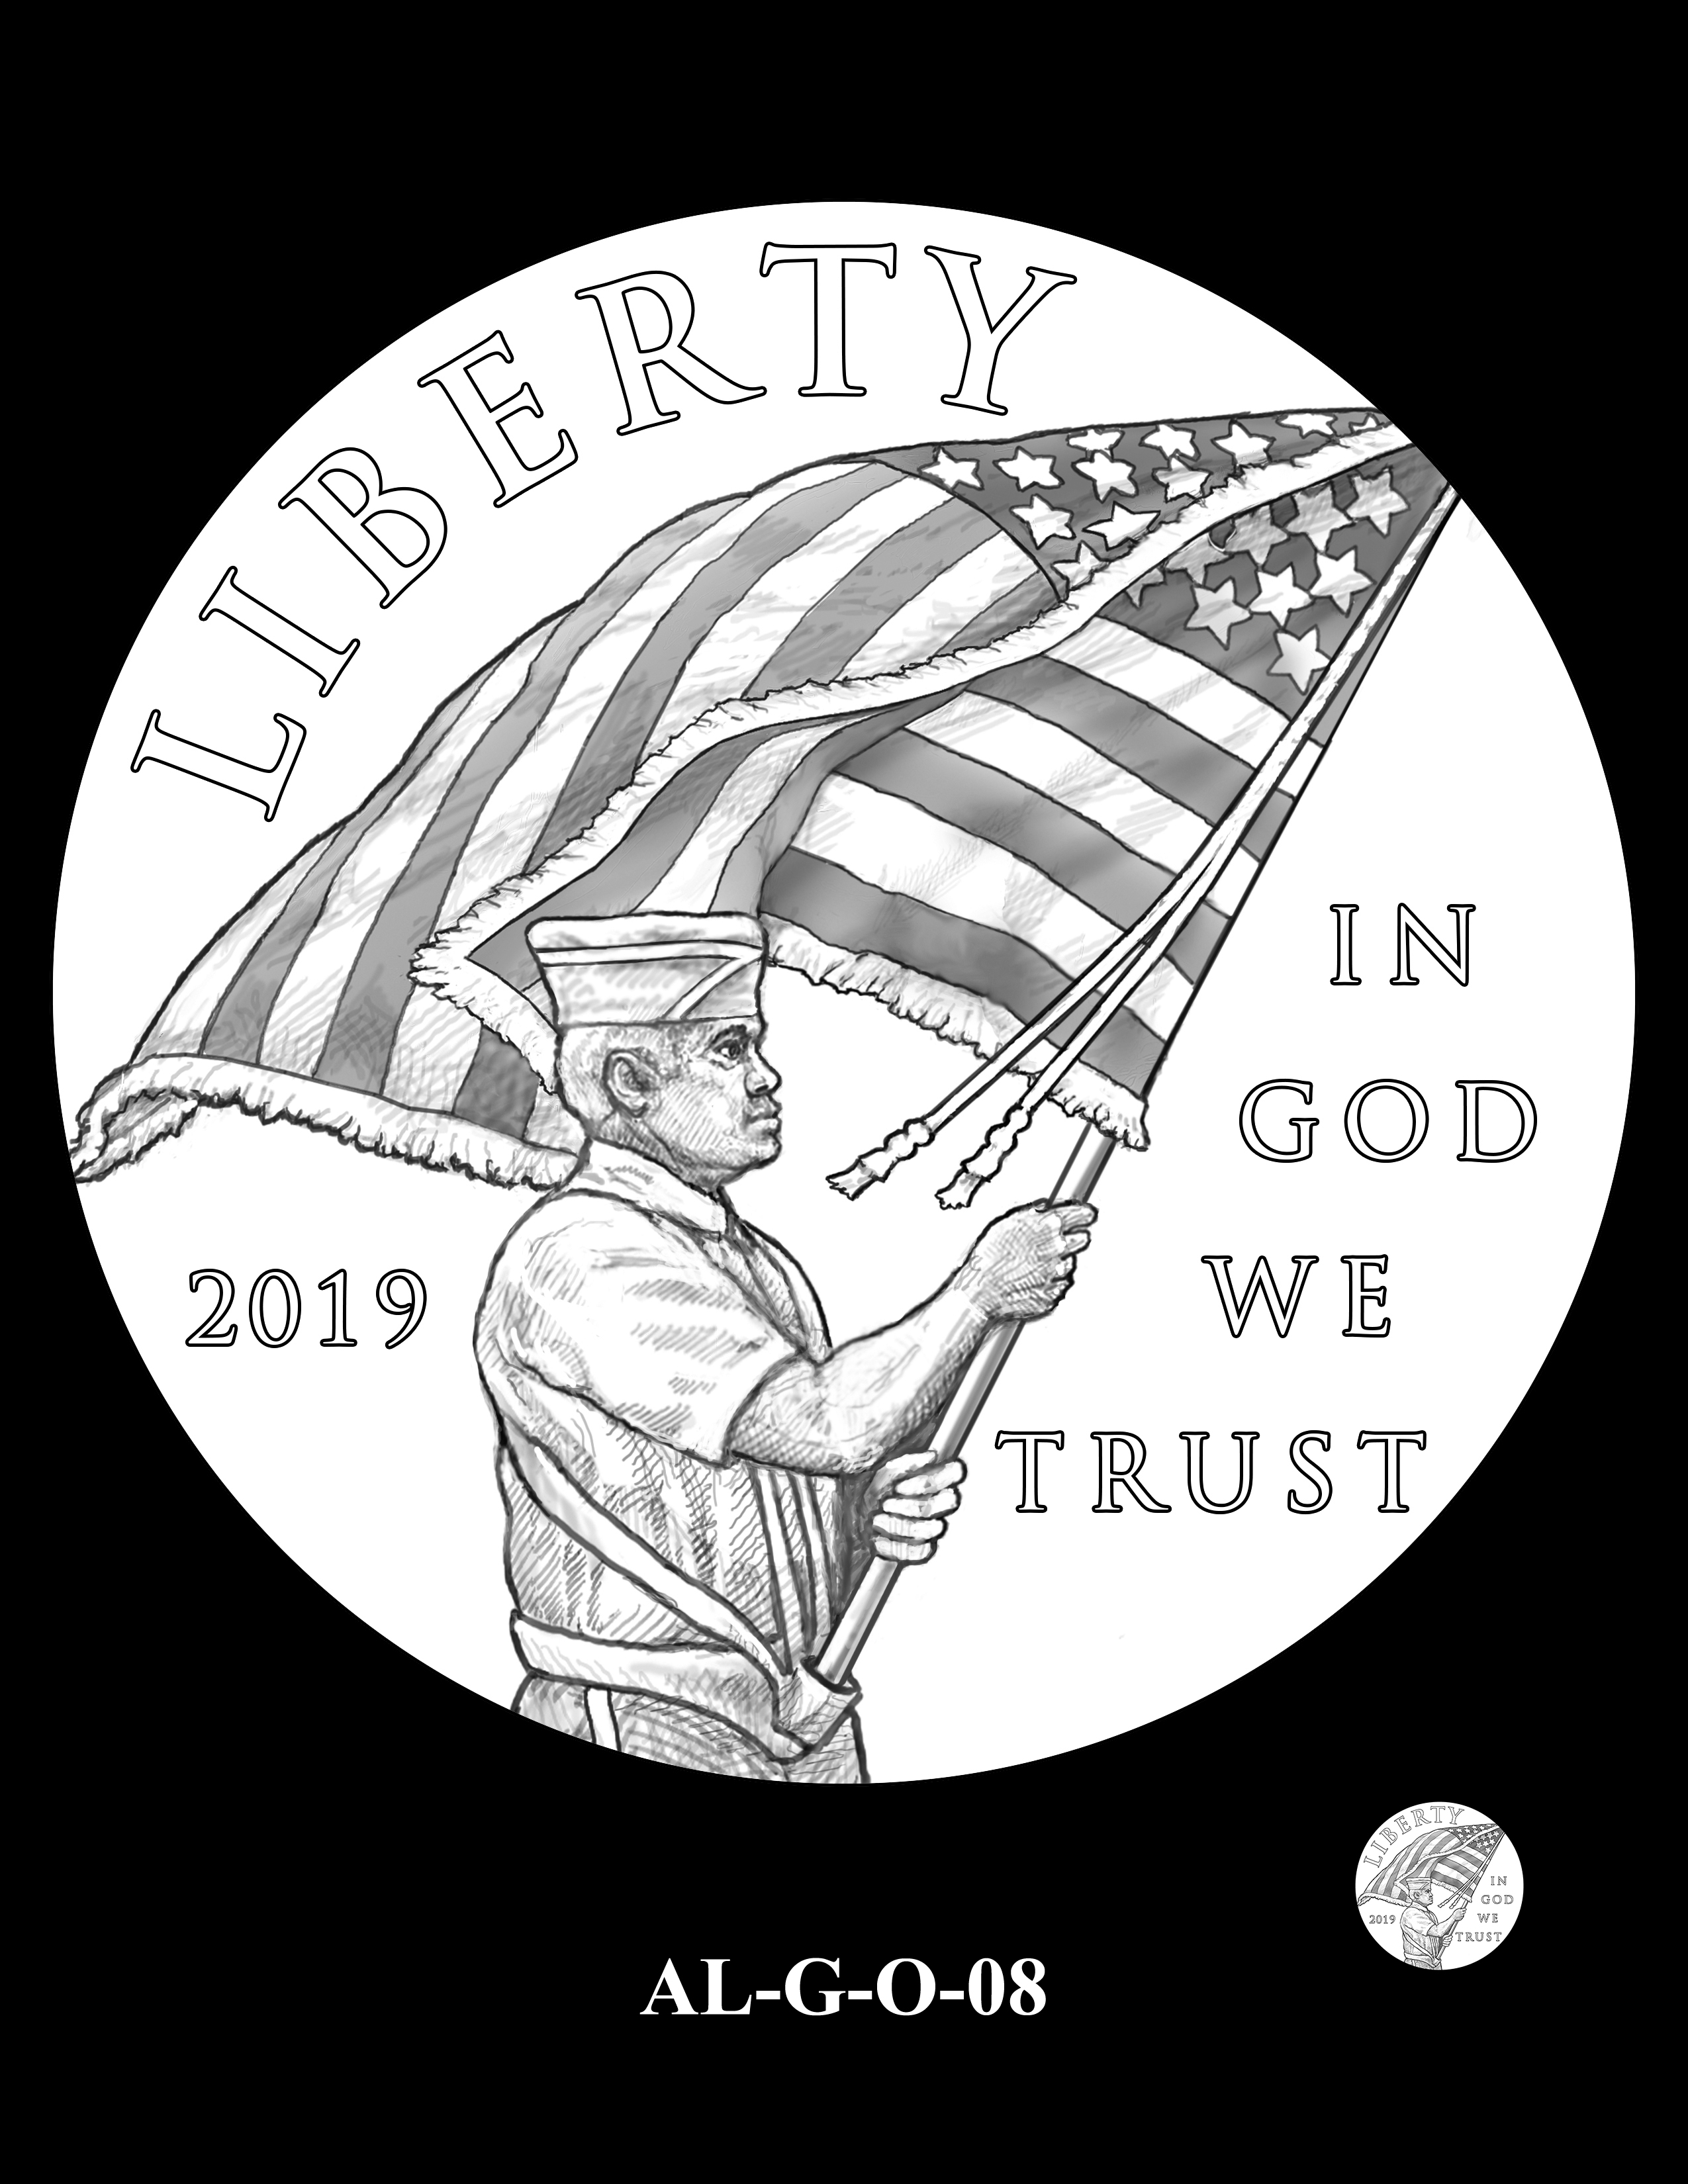 AL-G-O-08 -- 2019 American Legion 100th Anniversary Commemorative Coin Program - Gold Obverse